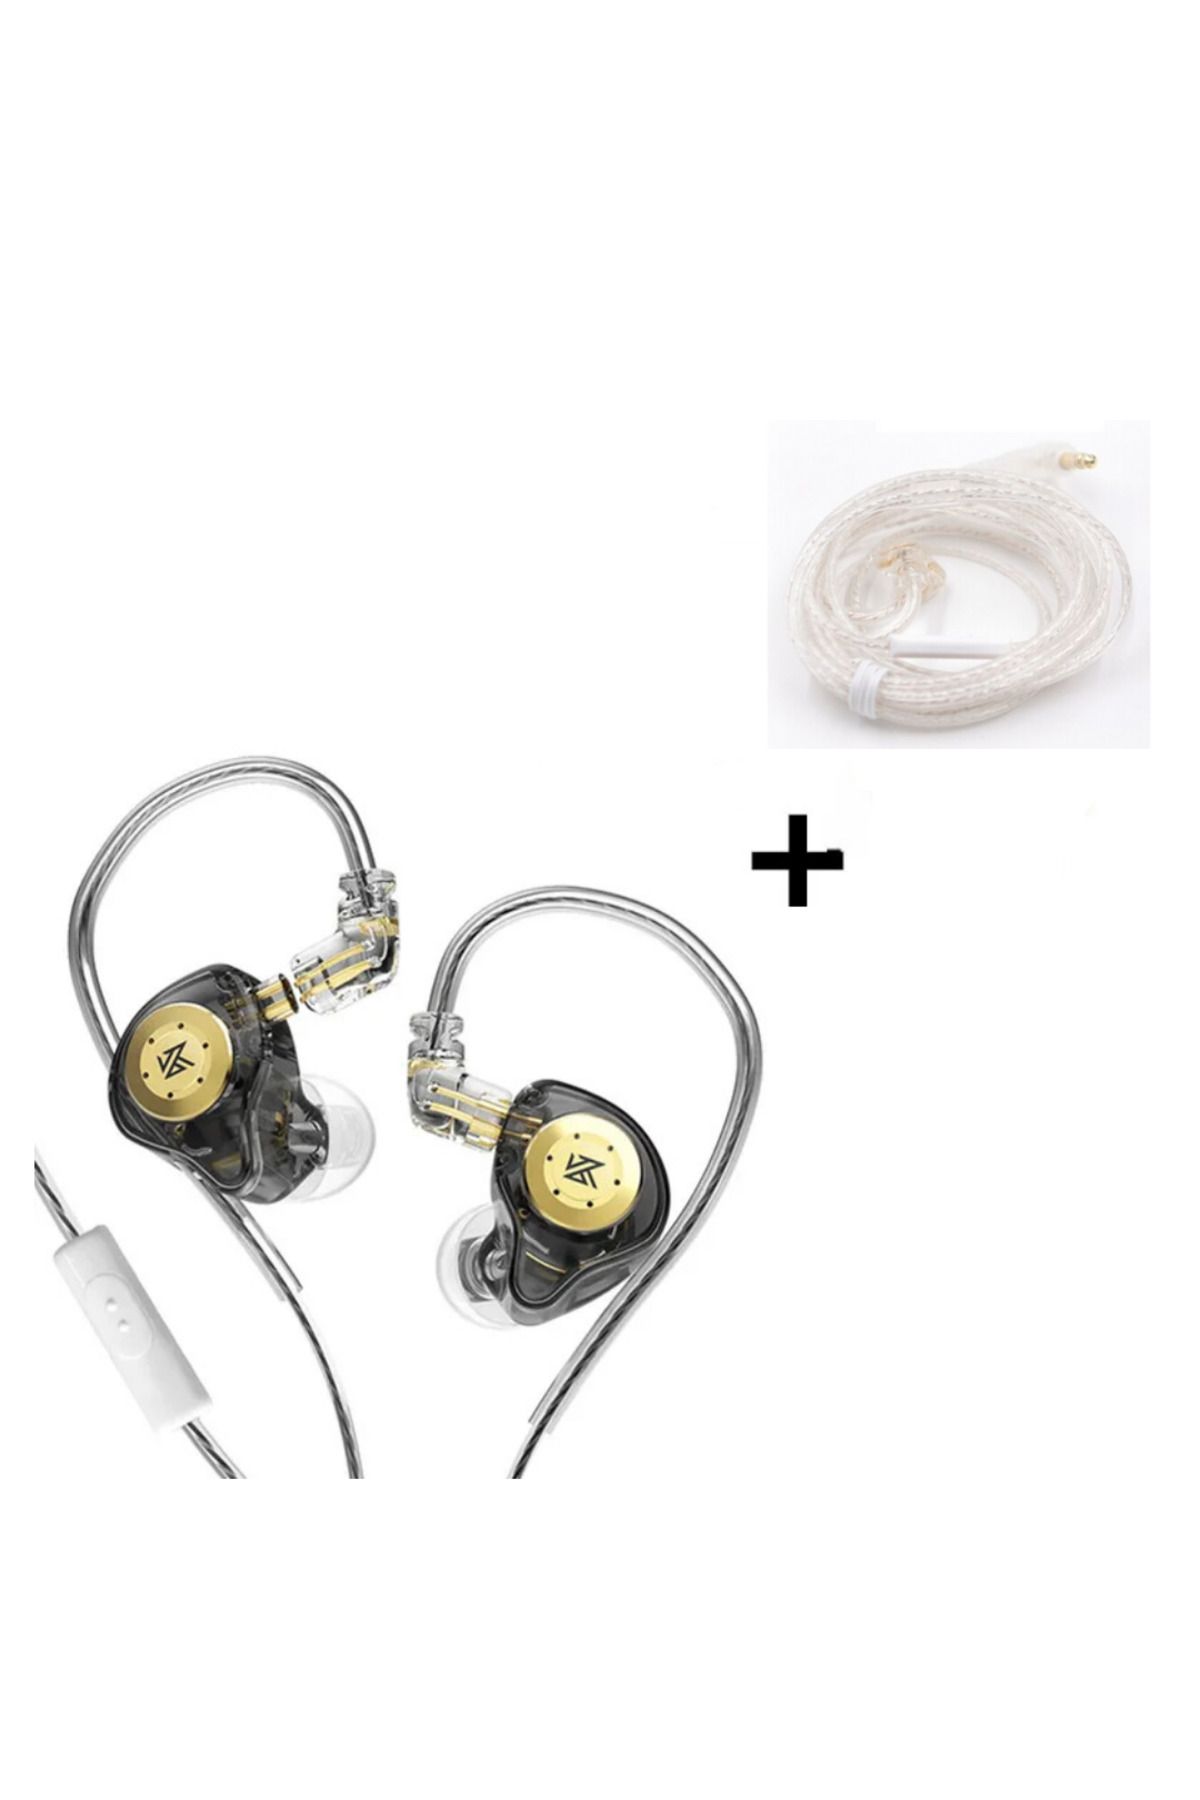 sipariş vakti KZ Edx Pro 1dd Mikrofonlu 10mm Dinamik Sürücü Kulak Içi Kulaklık + KZ Gümüş Yükseltme Kablosu Combo